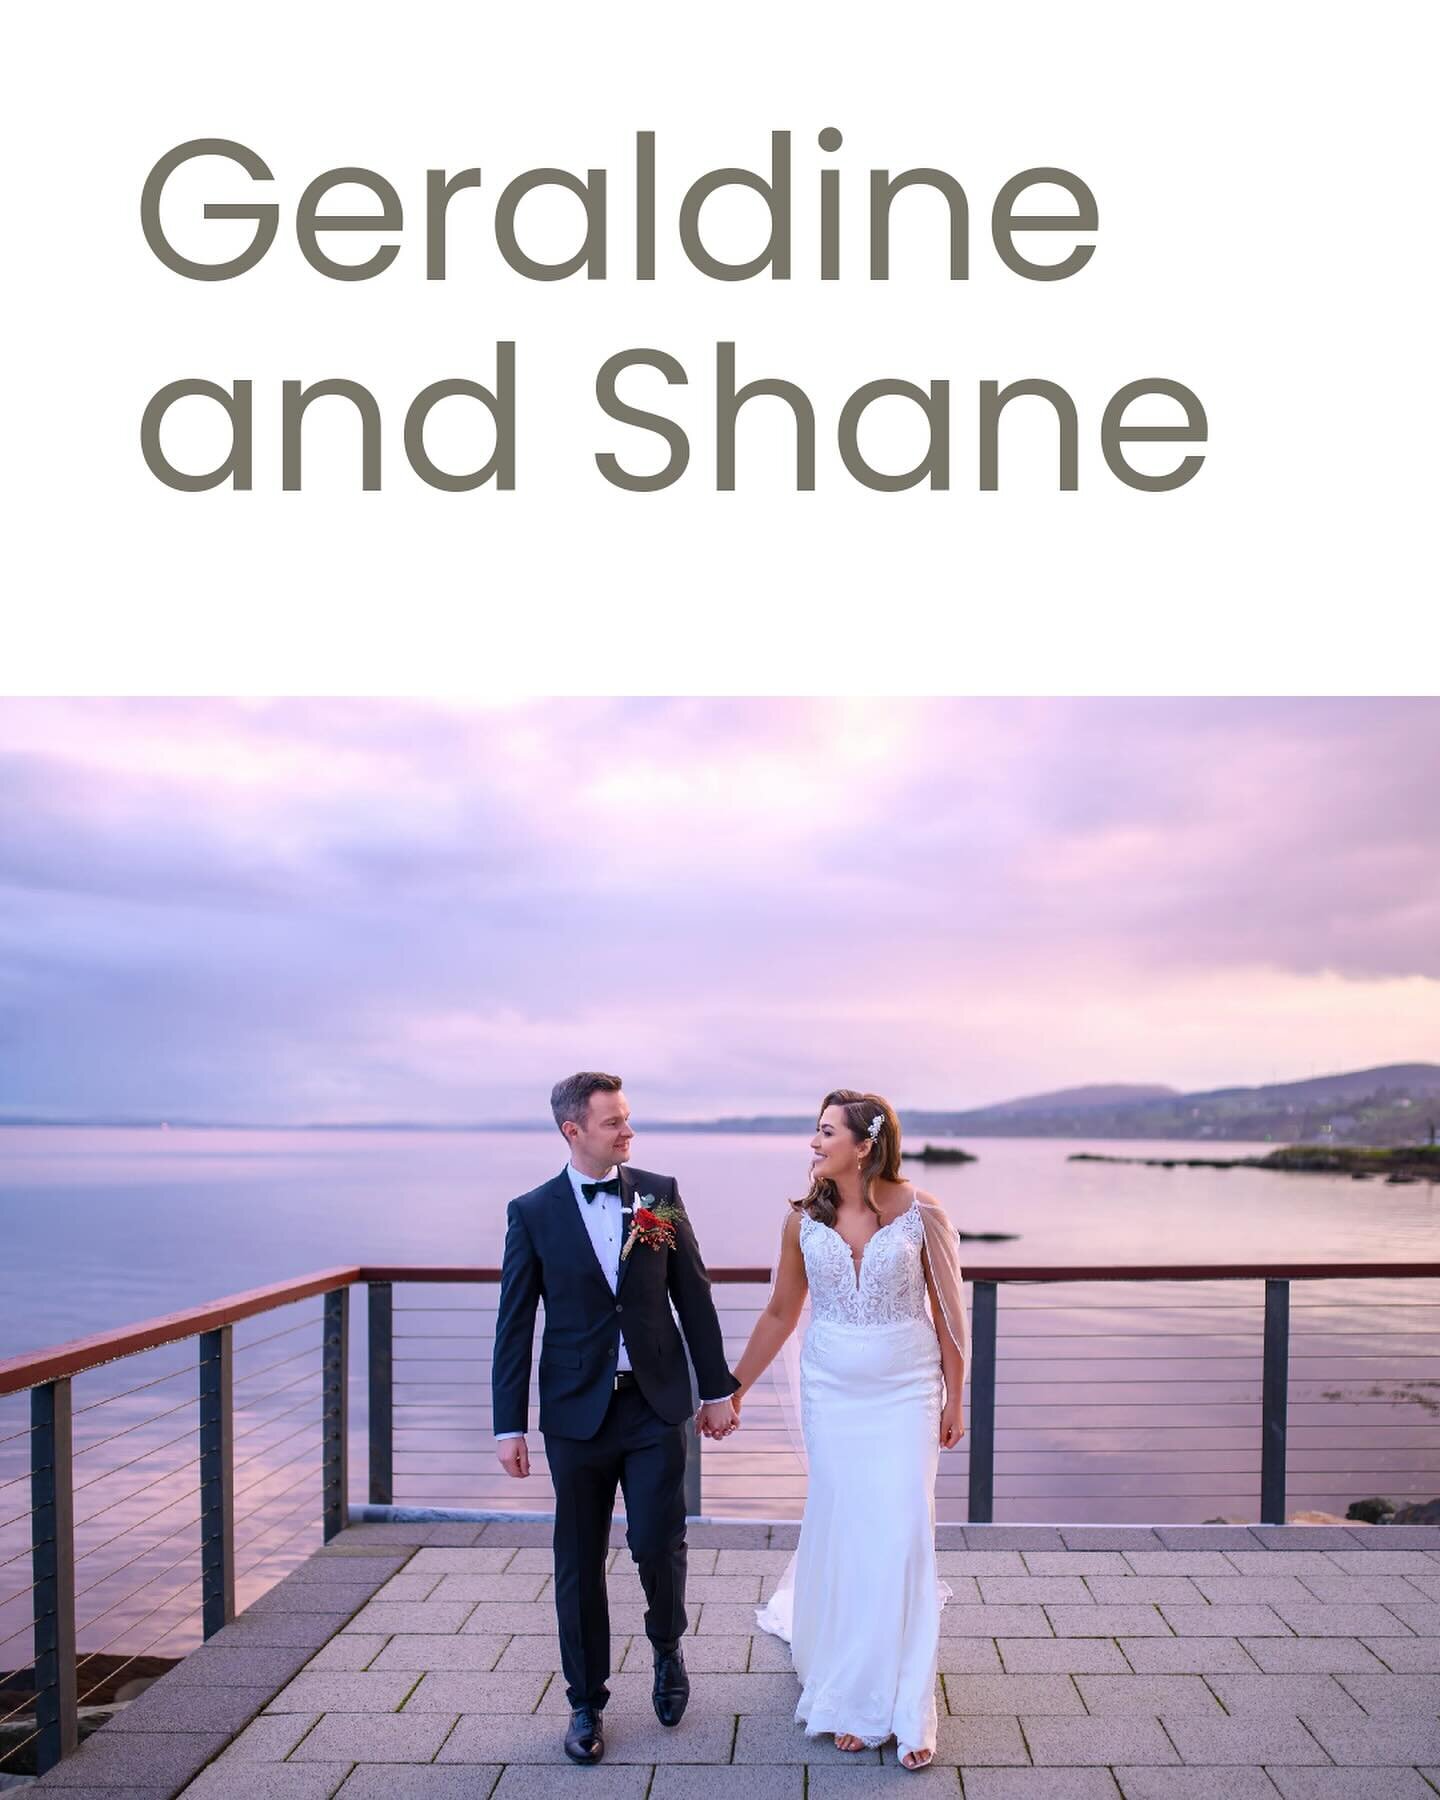 Geraldine and Shane&rsquo;s beautiful autumn wedding at The Redcastle Hotel.
#autumnvibes🍁 #autumnwedding #weddingdress #weddingsireland #donegalwedding #sunsetweddingphotos #nikonweddingphotographer #inshowen